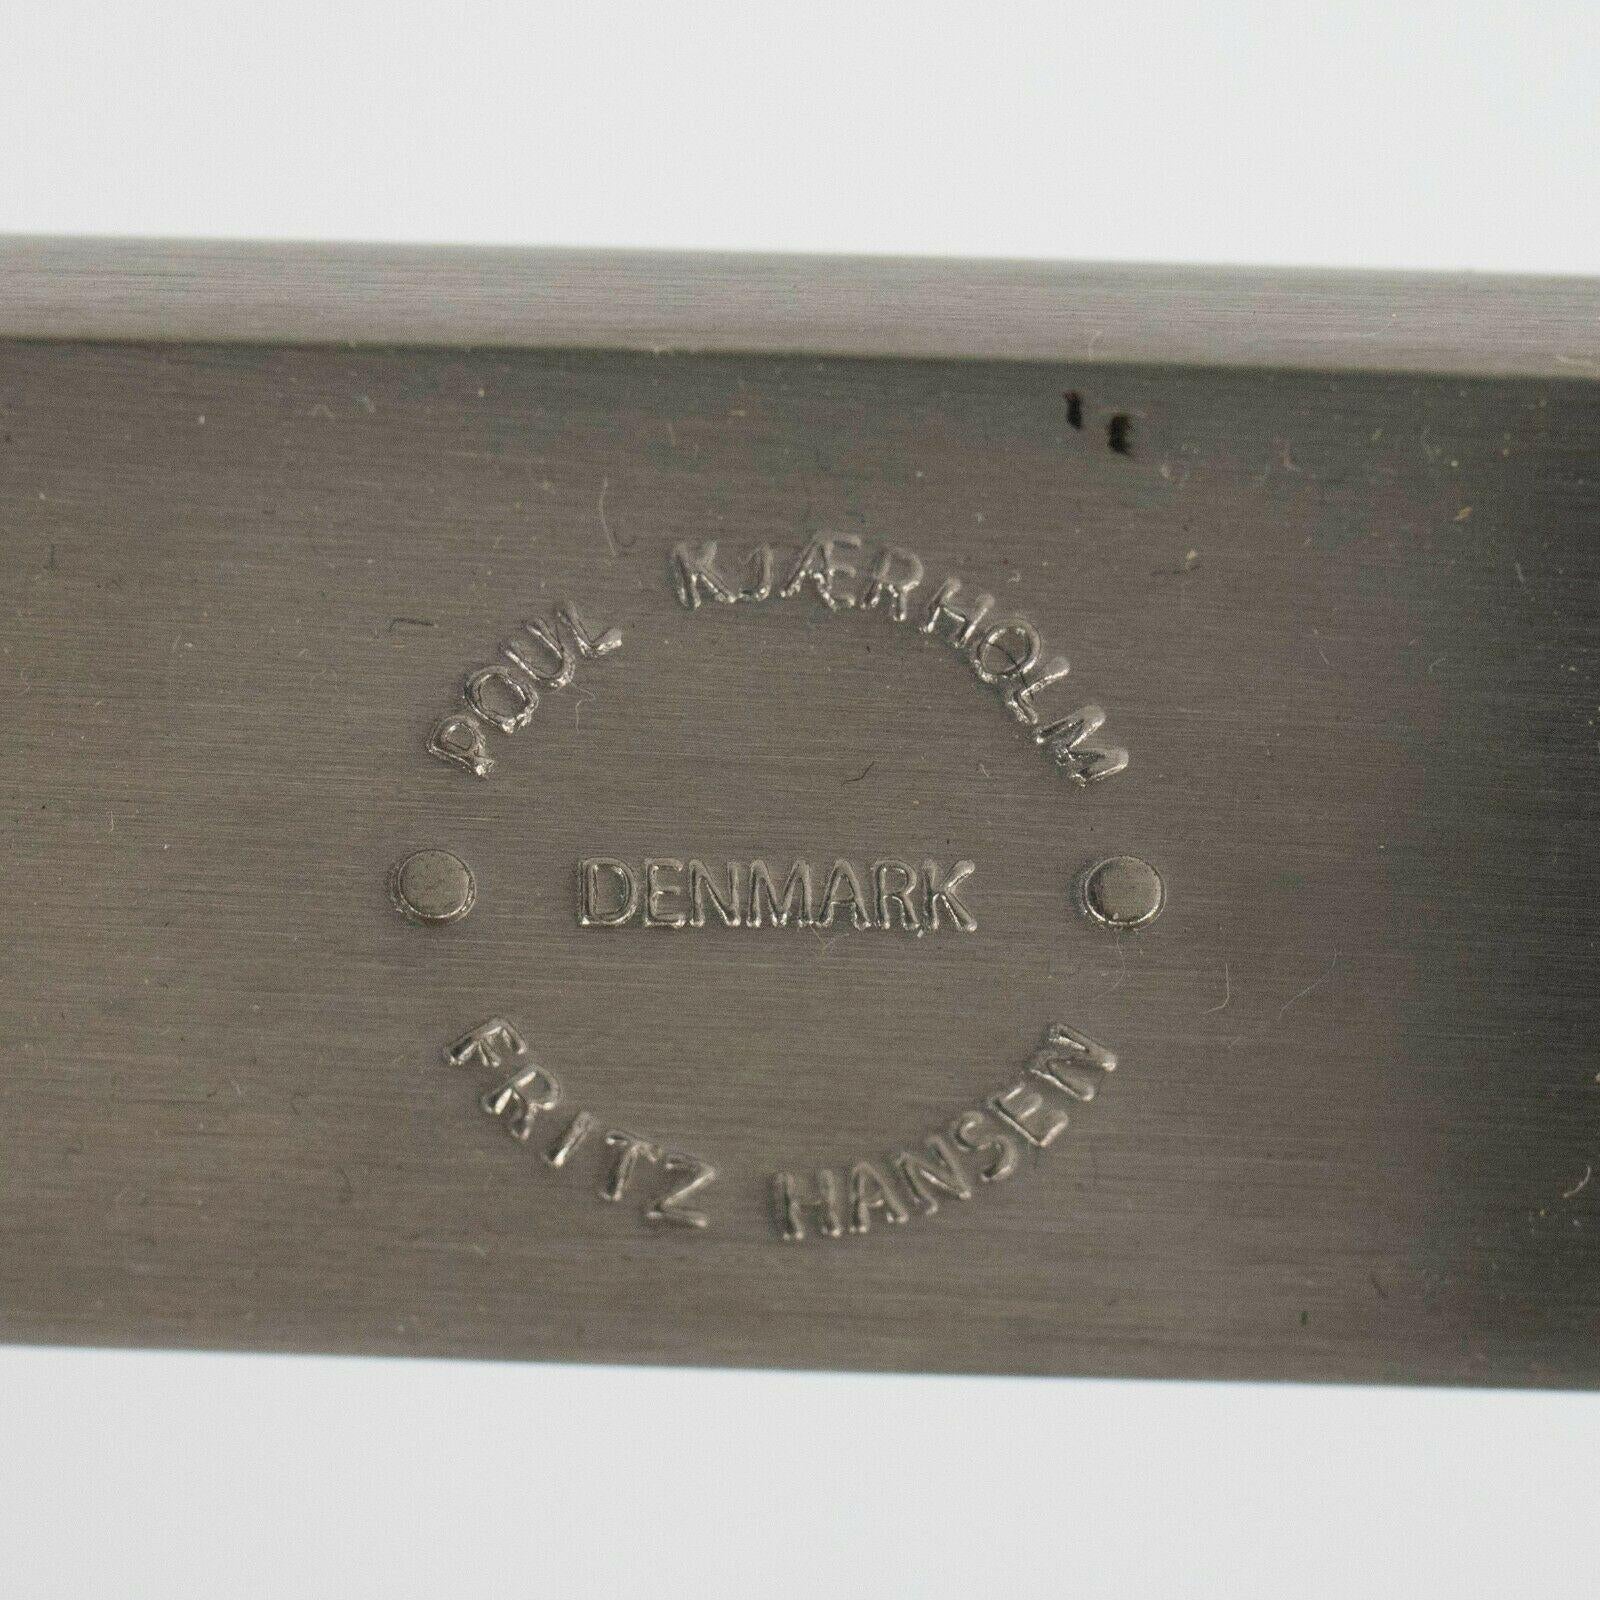 Zum Verkauf steht ein PK61 Couchtisch, entworfen von Poul Kjaerholm und hergestellt von Fritz Hansen in Dänemark. Dies ist ein ikonisches Werk von Kjaerholm mit versetzten Beinen und einer schön gemaserten Marmorplatte. Dieses Beispiel wurde in